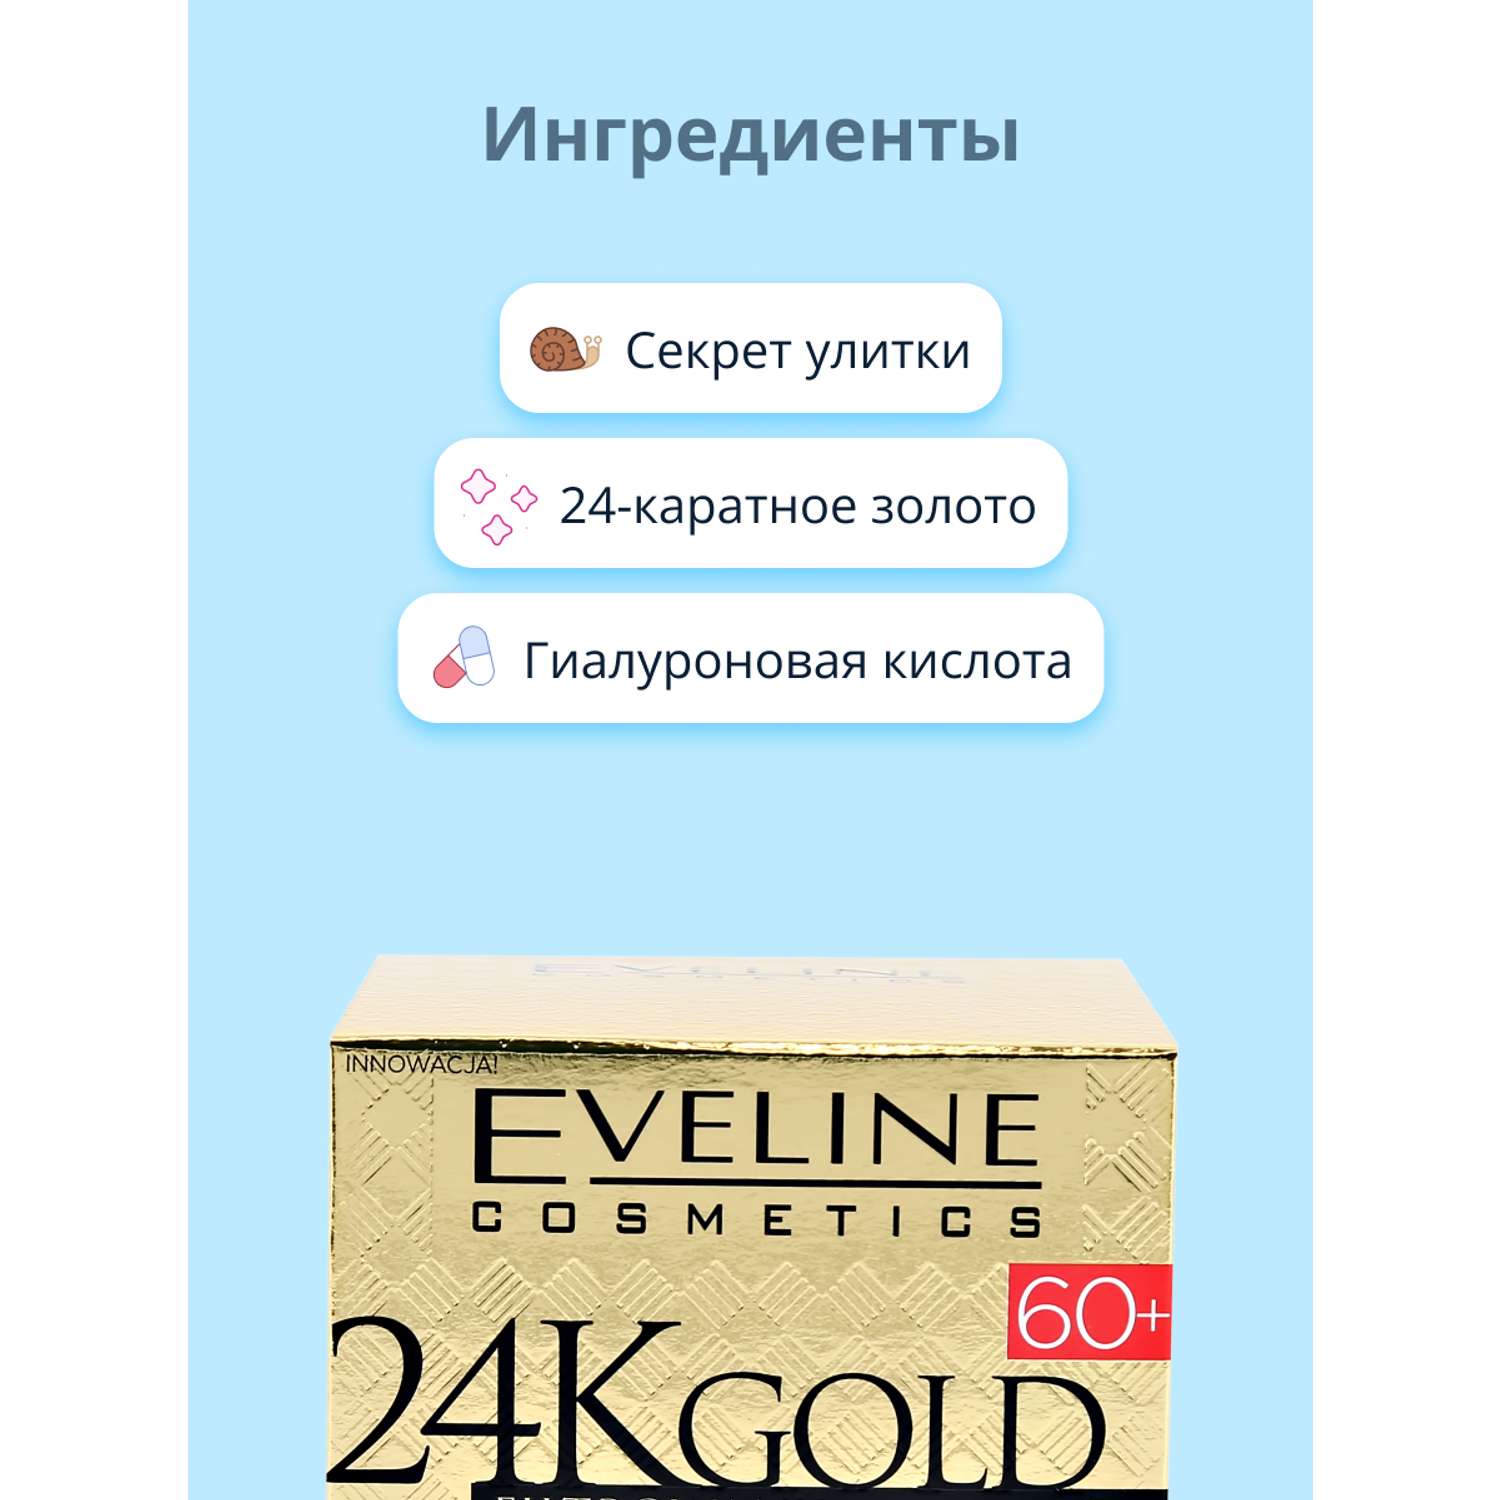 Крем для лица EVELINE 24k gold ультравосстанавливающий 60+ против морщин 50 мл - фото 2